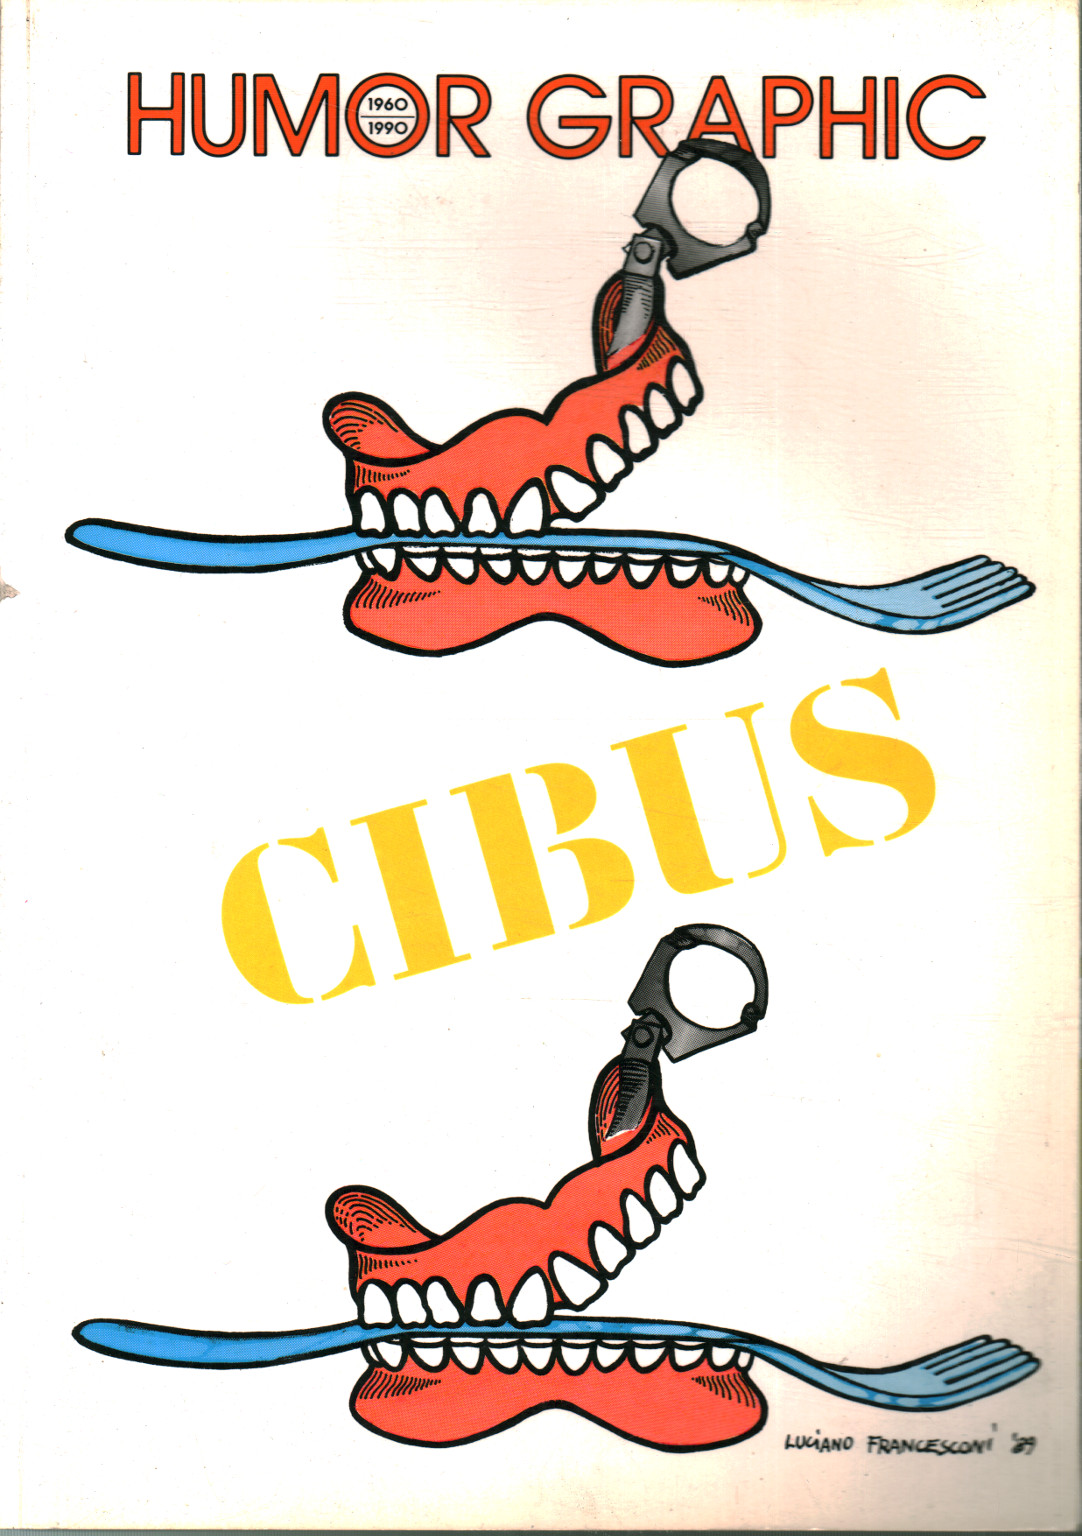 Humour Graphique (1960-1990 n.29) Cibus,Humour Graphique (1960-1990 n.29) Cibus